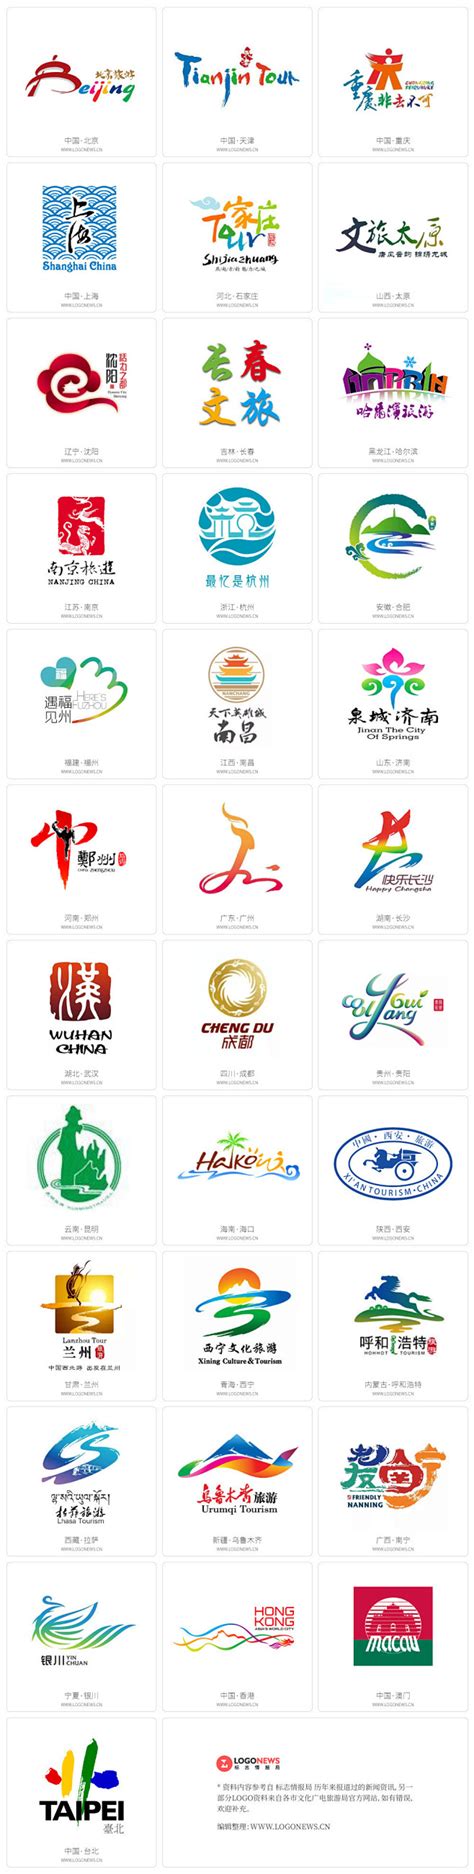 南宁发布全新旅游品牌口号和LOGO